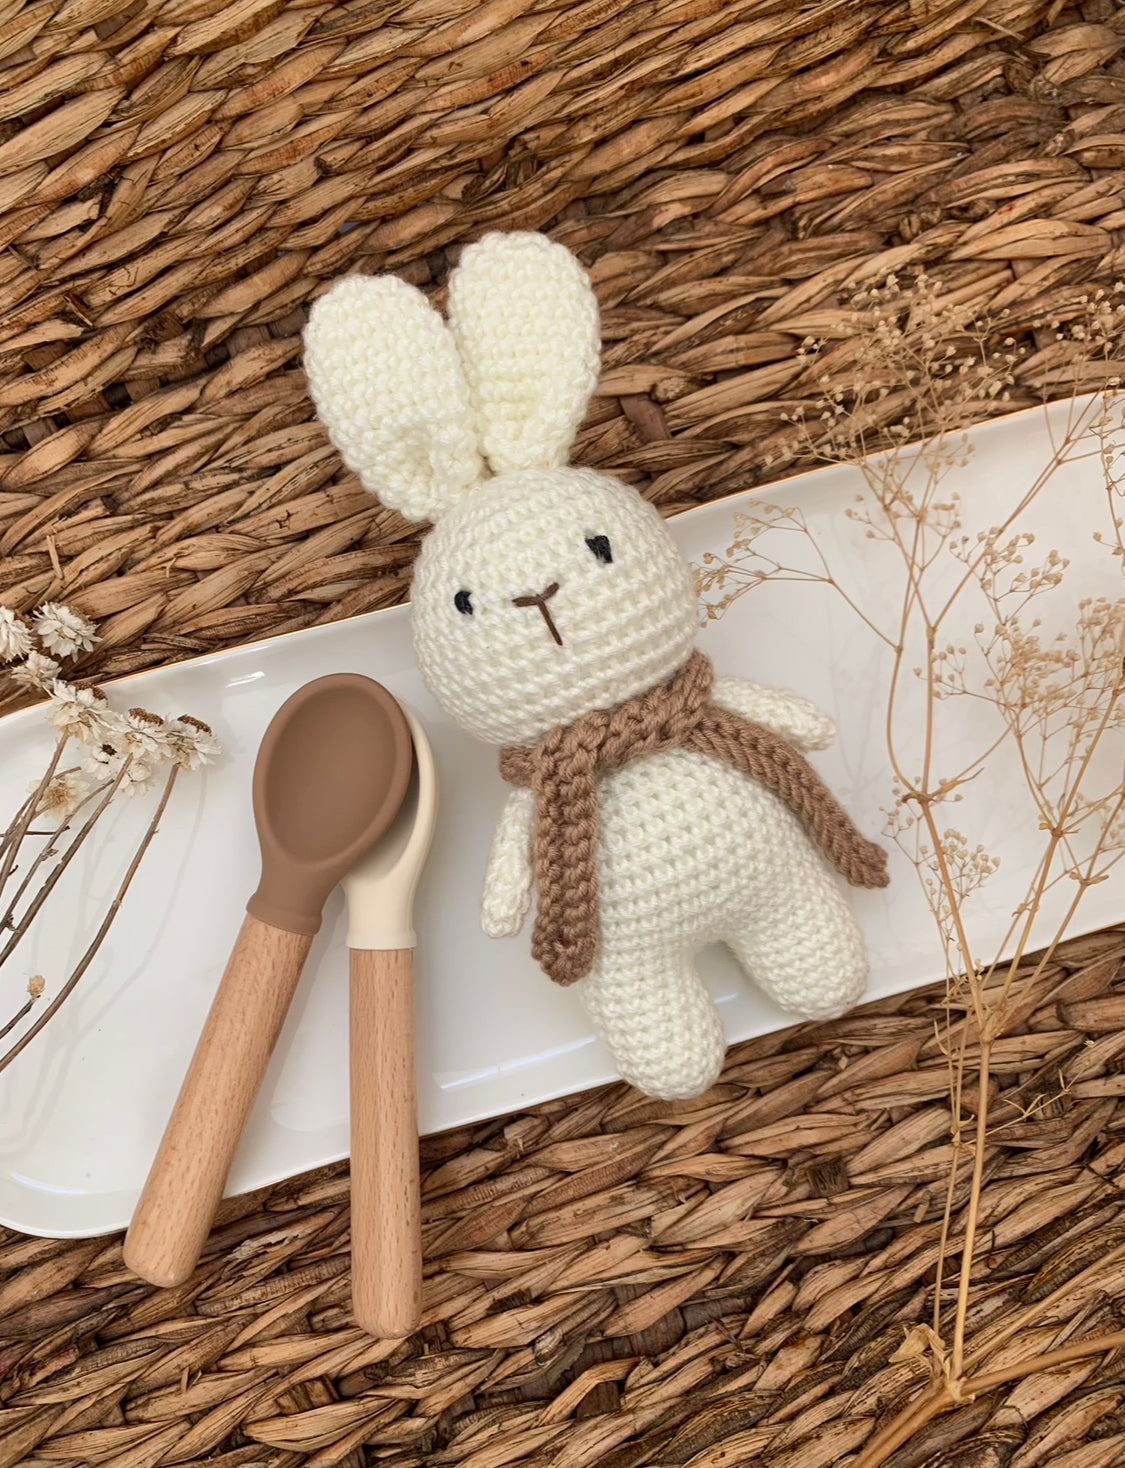 Crochet Plush Bunny